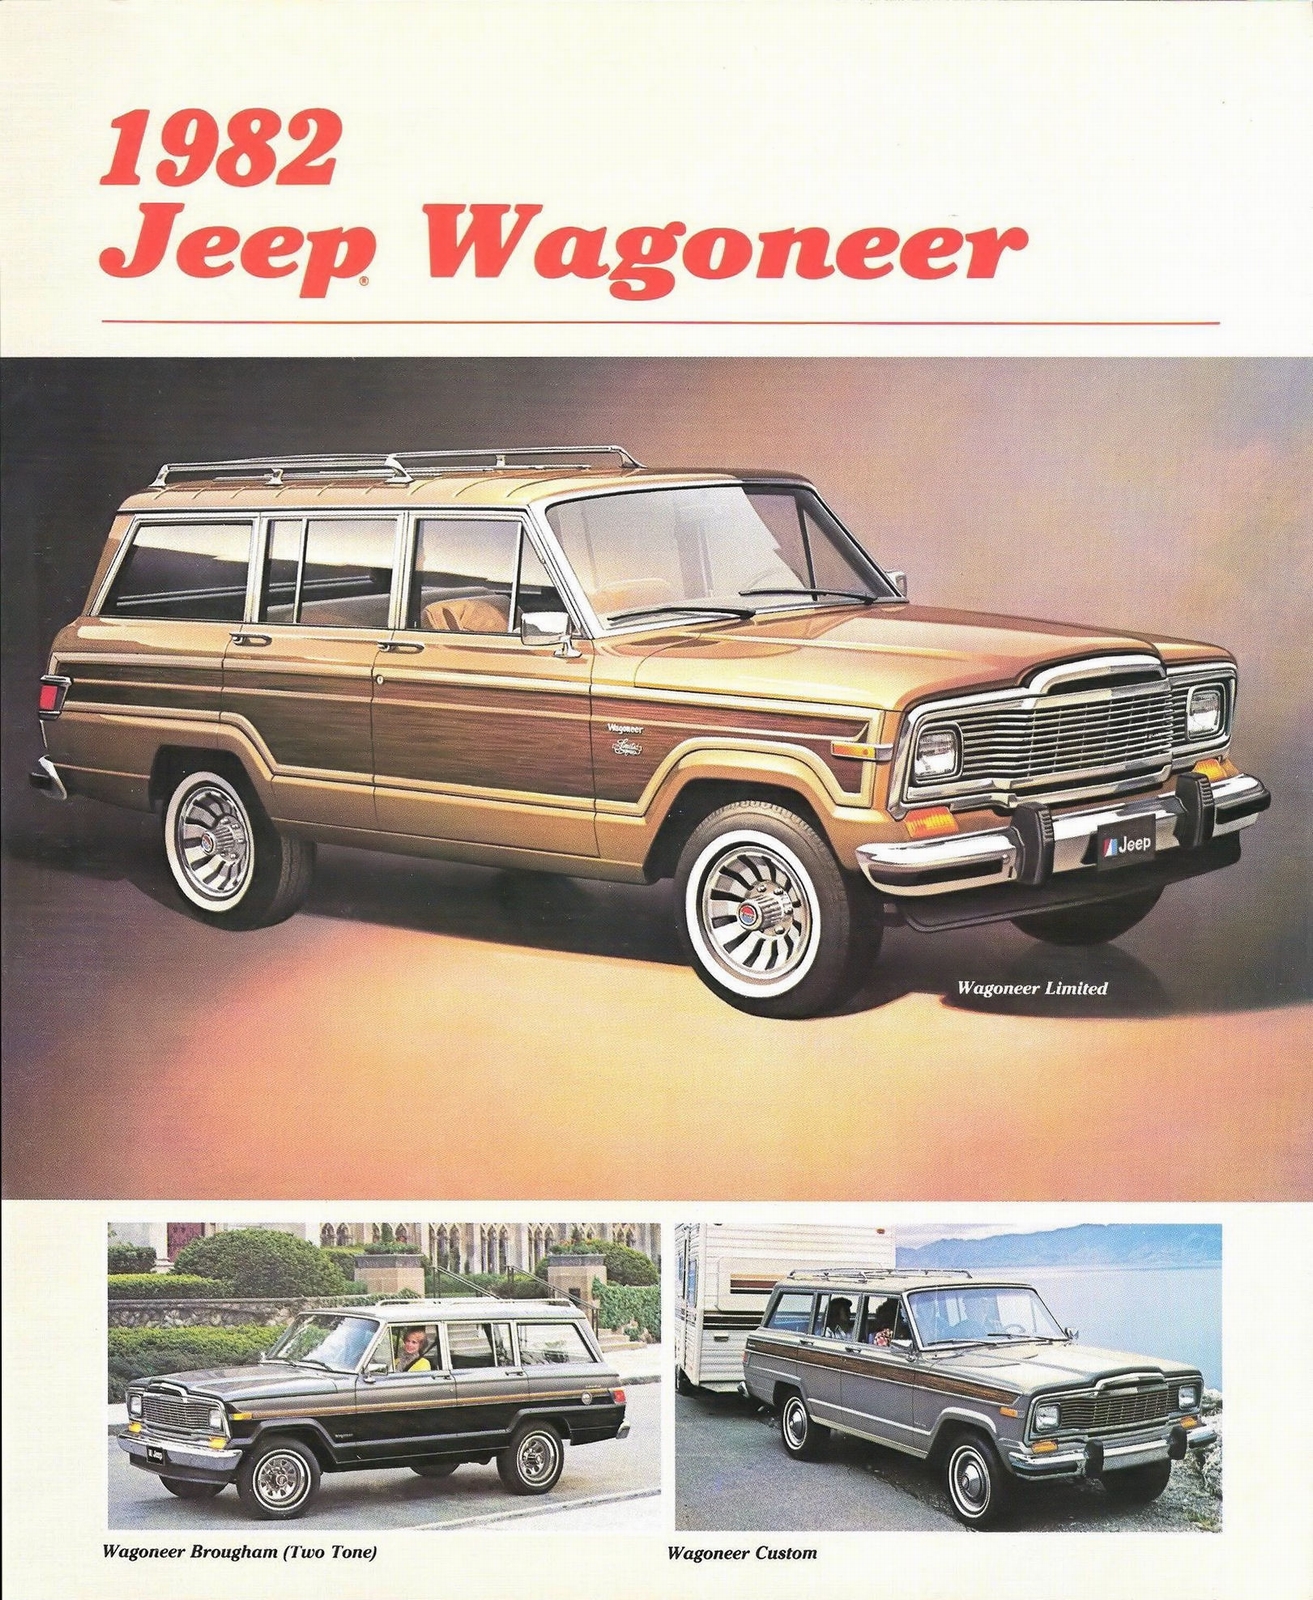 n_1982 Jeep Wagoneer-01.jpg